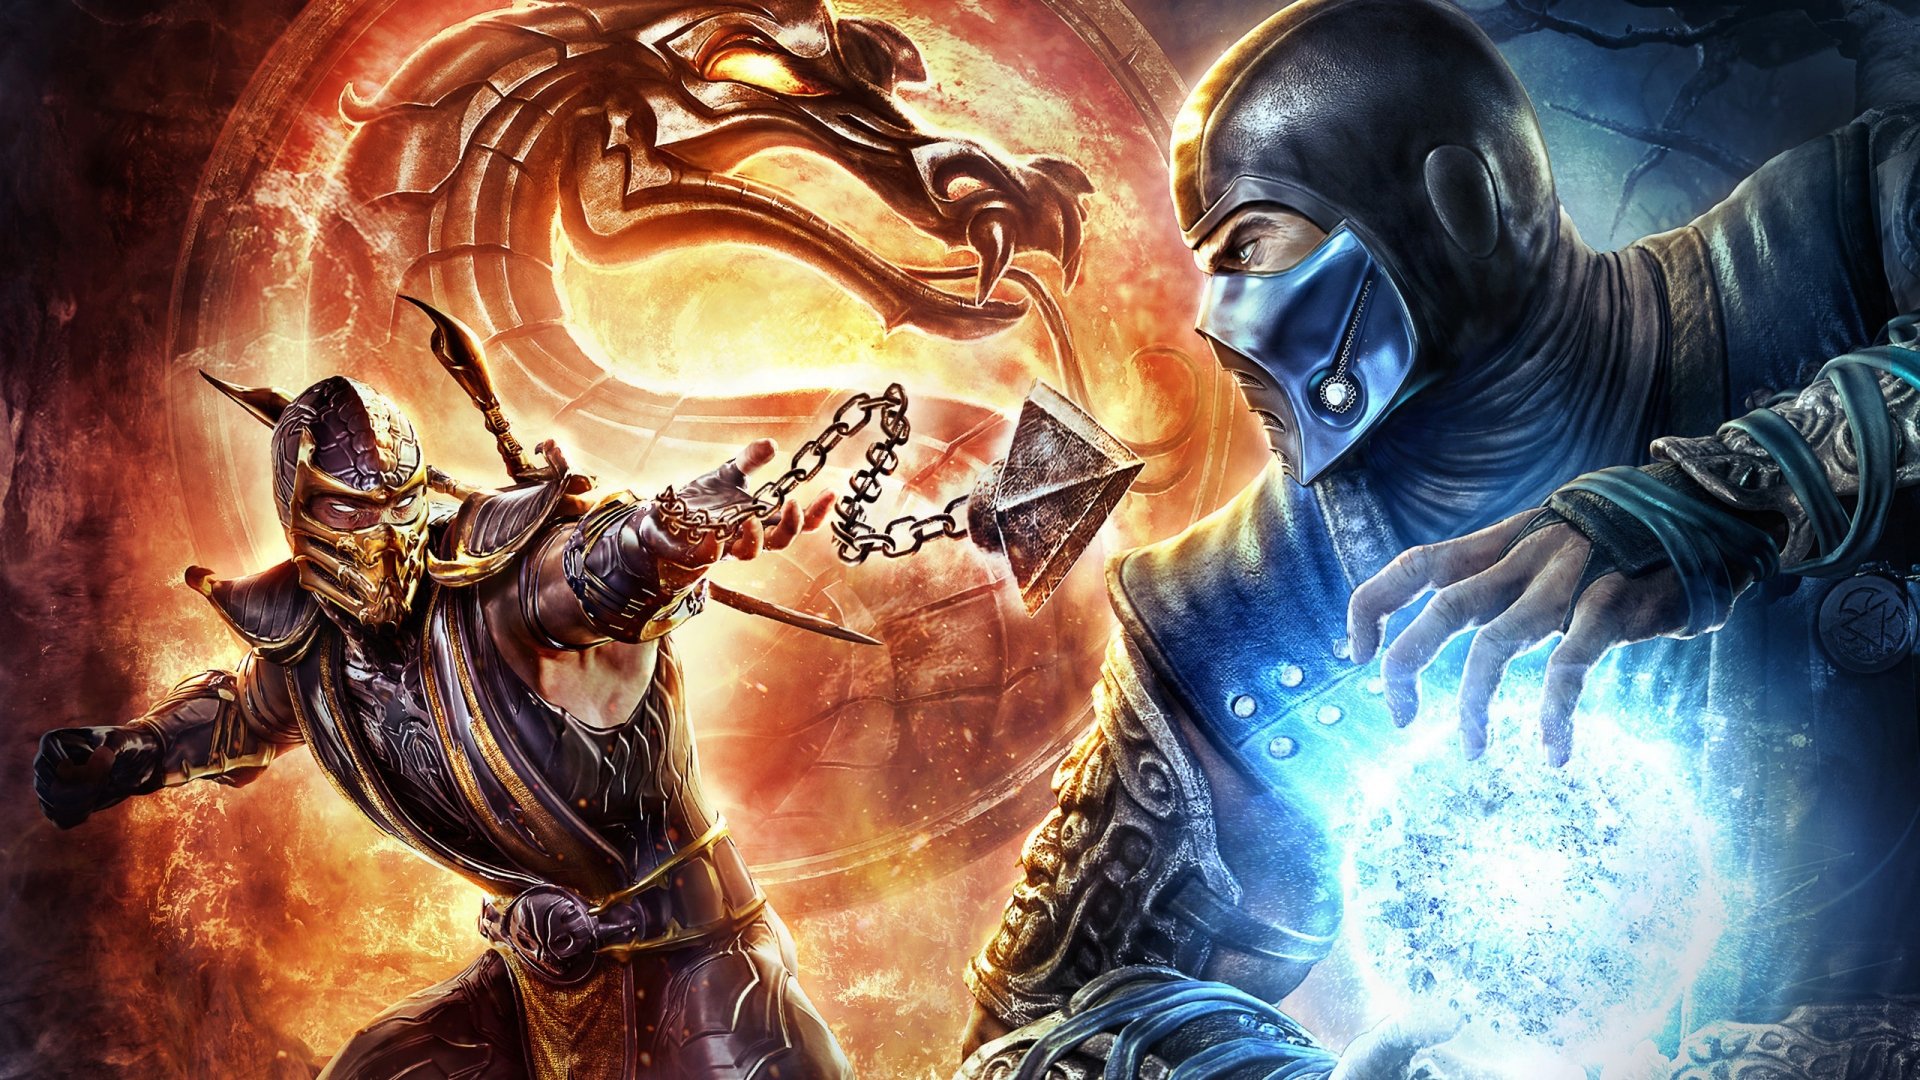 As 9 fatalidades mais estranhas da história do Mortal Kombat